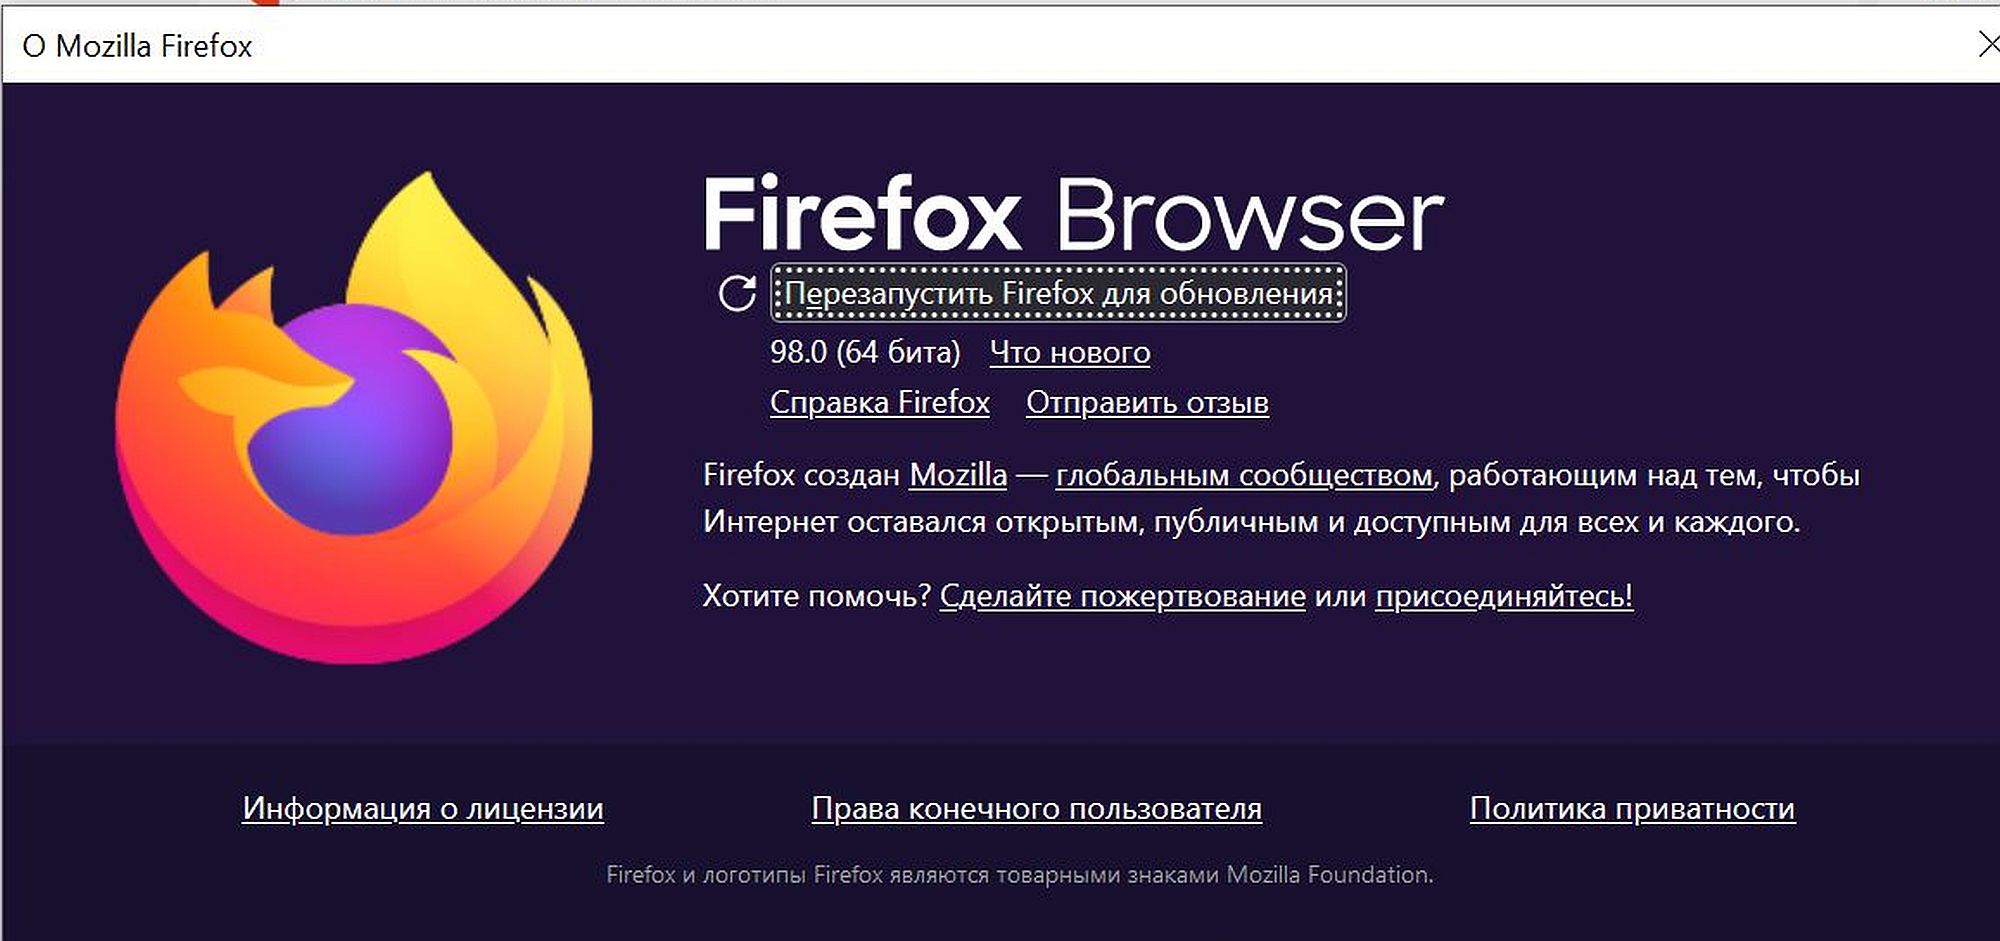 Возвращаем Яндекс-поиск в Firefox / Программы, сервисы и сайты / iXBT Live